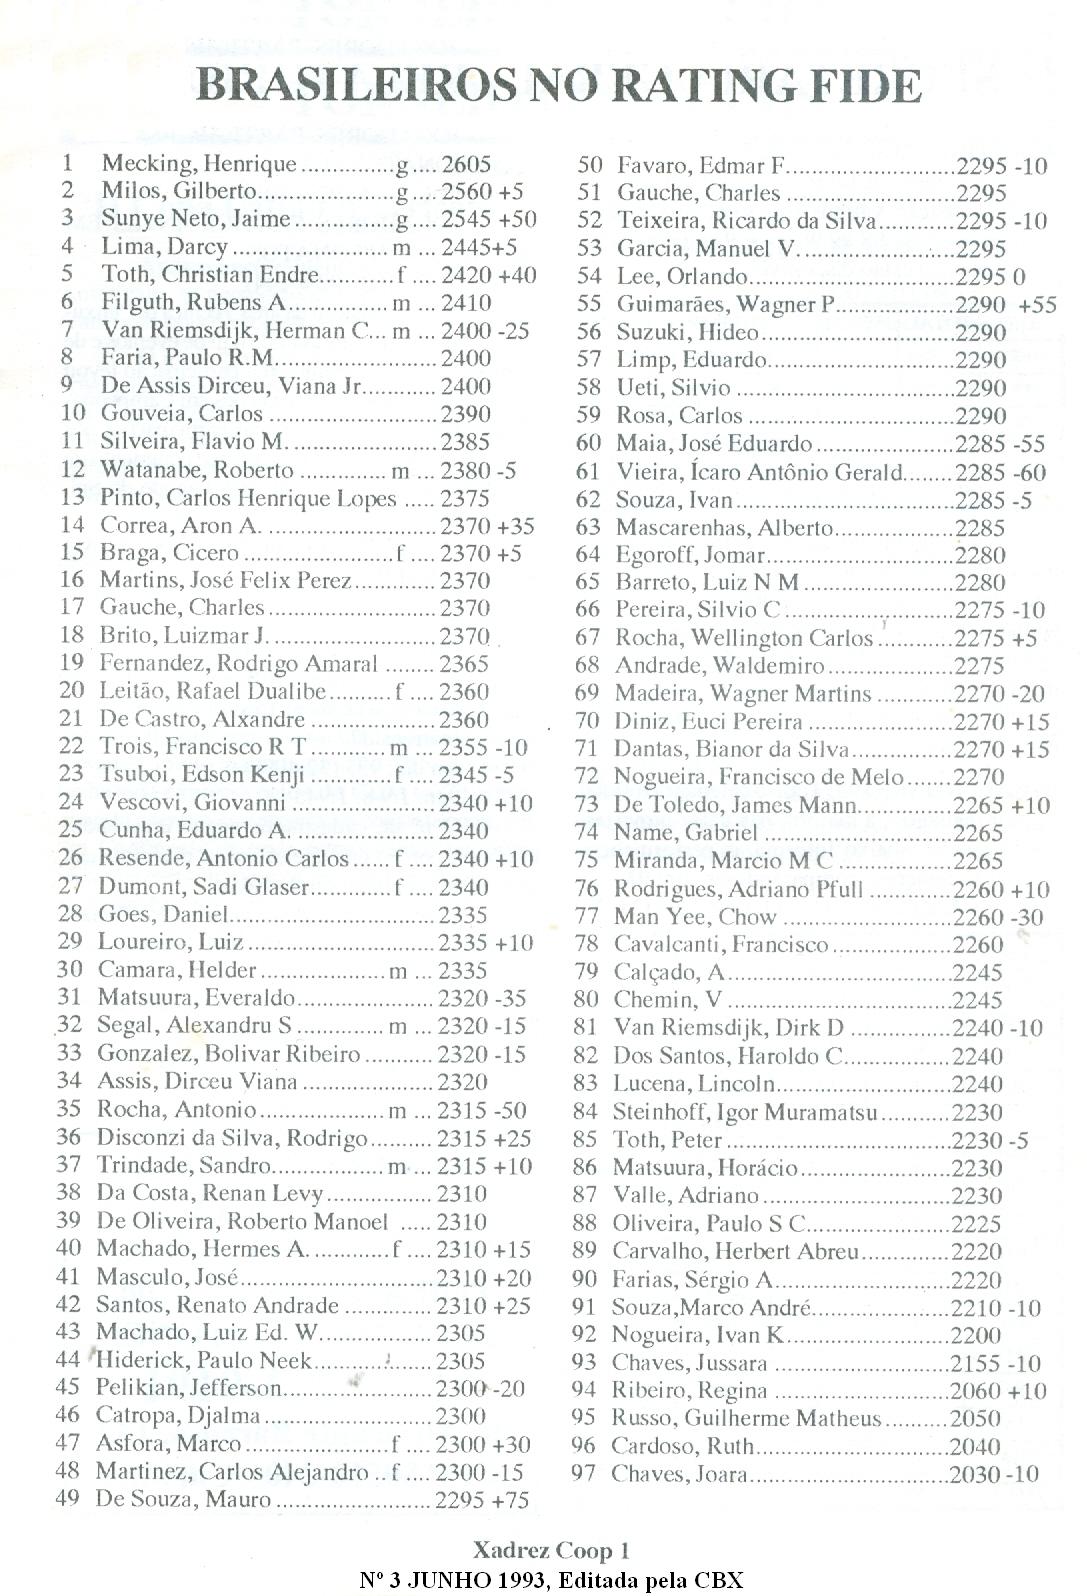 Brasil no Rating FIDE: lista junho 1993 x lista atual - LQI – Há 10 anos,  mais que um blog sobre xadrez